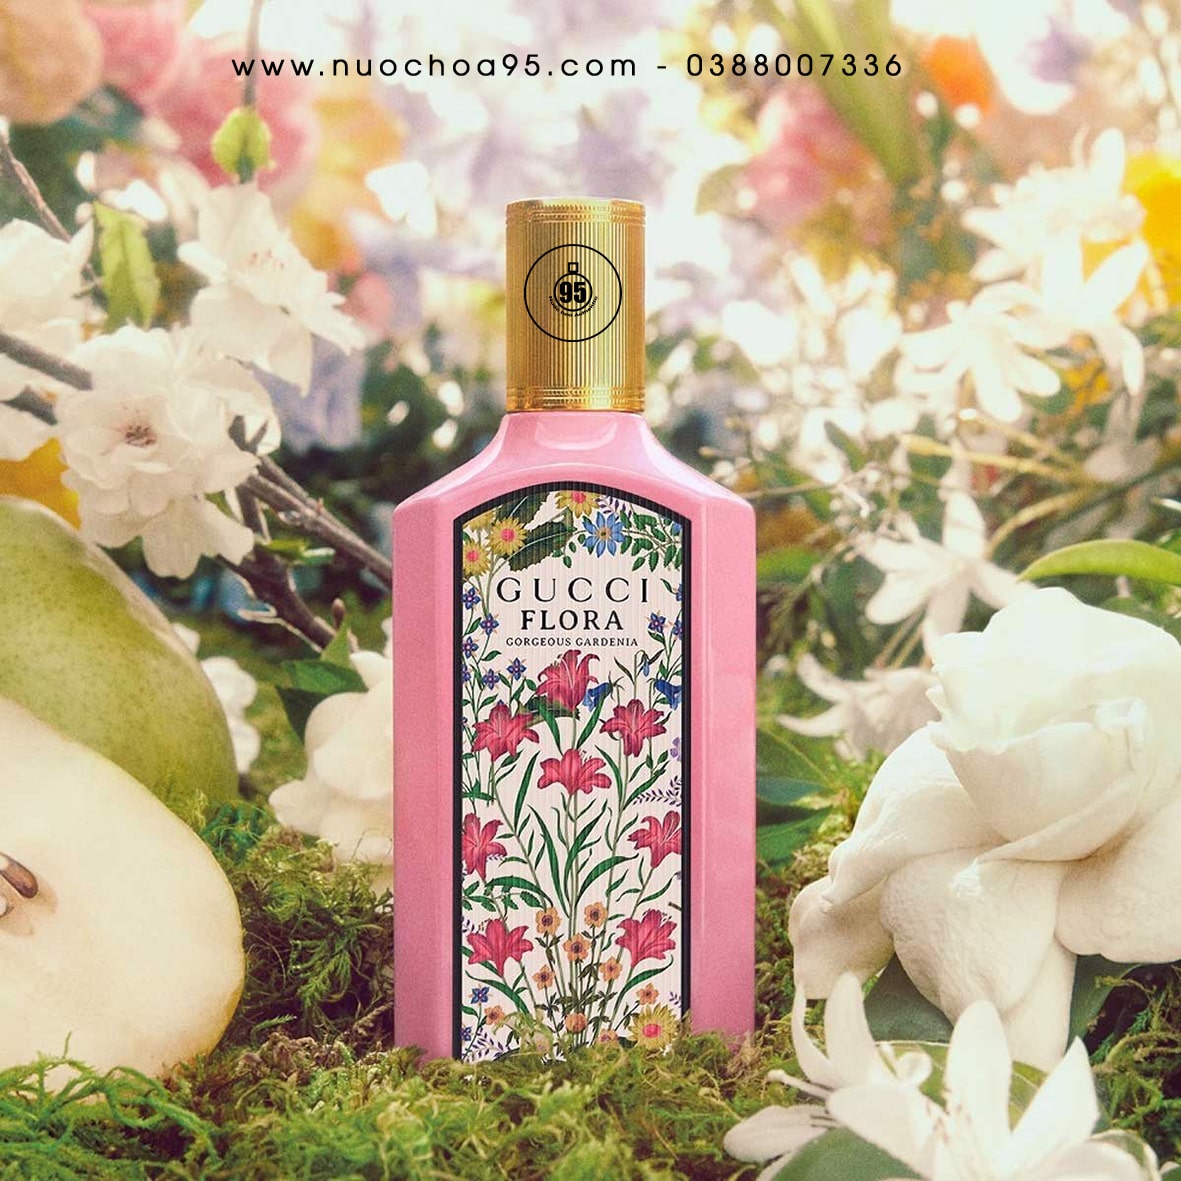 Nước hoa Gucci Flora Gorgeous Gardenia Eau de Parfum - Ảnh 1